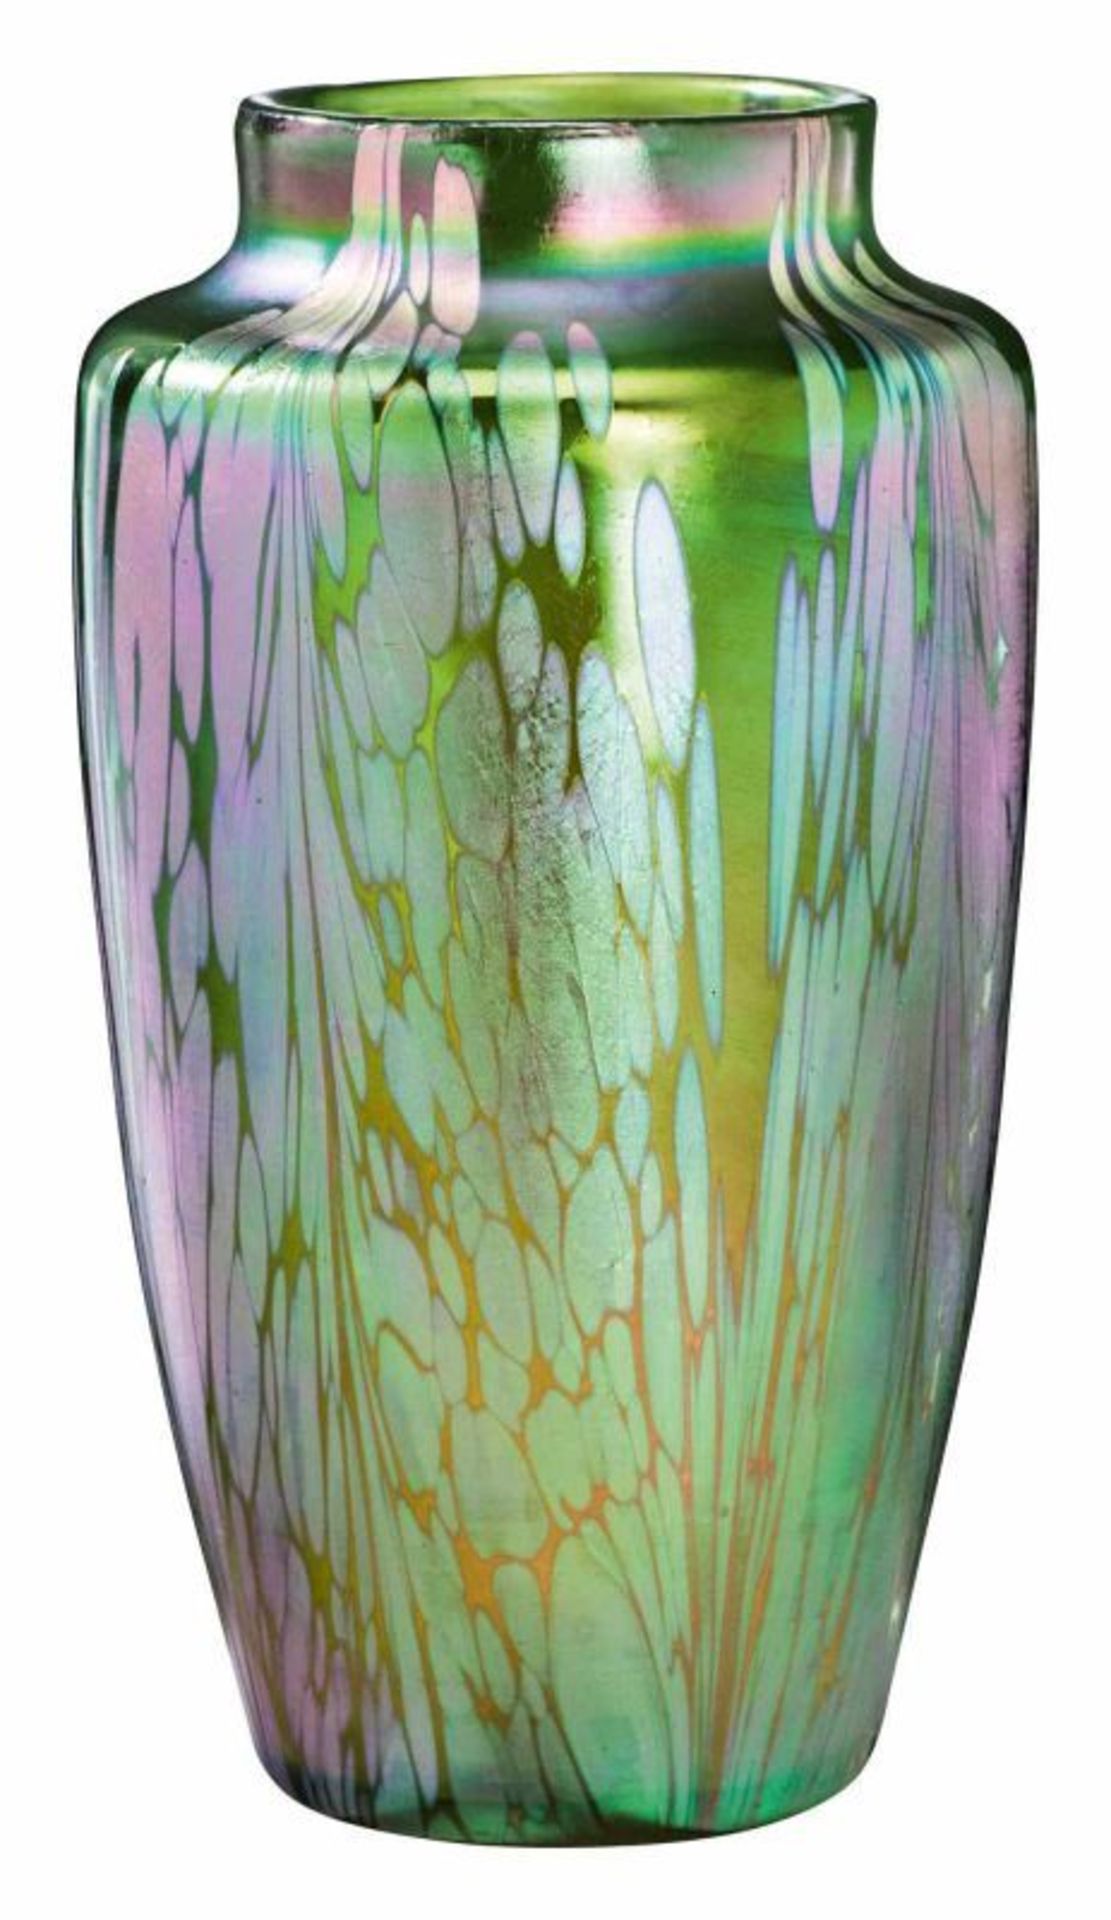 Prächtige Vase mit Medici-Dekor Johann Loetz Witwe, Klostermühle 1902. Farbloses Glas, irisierend